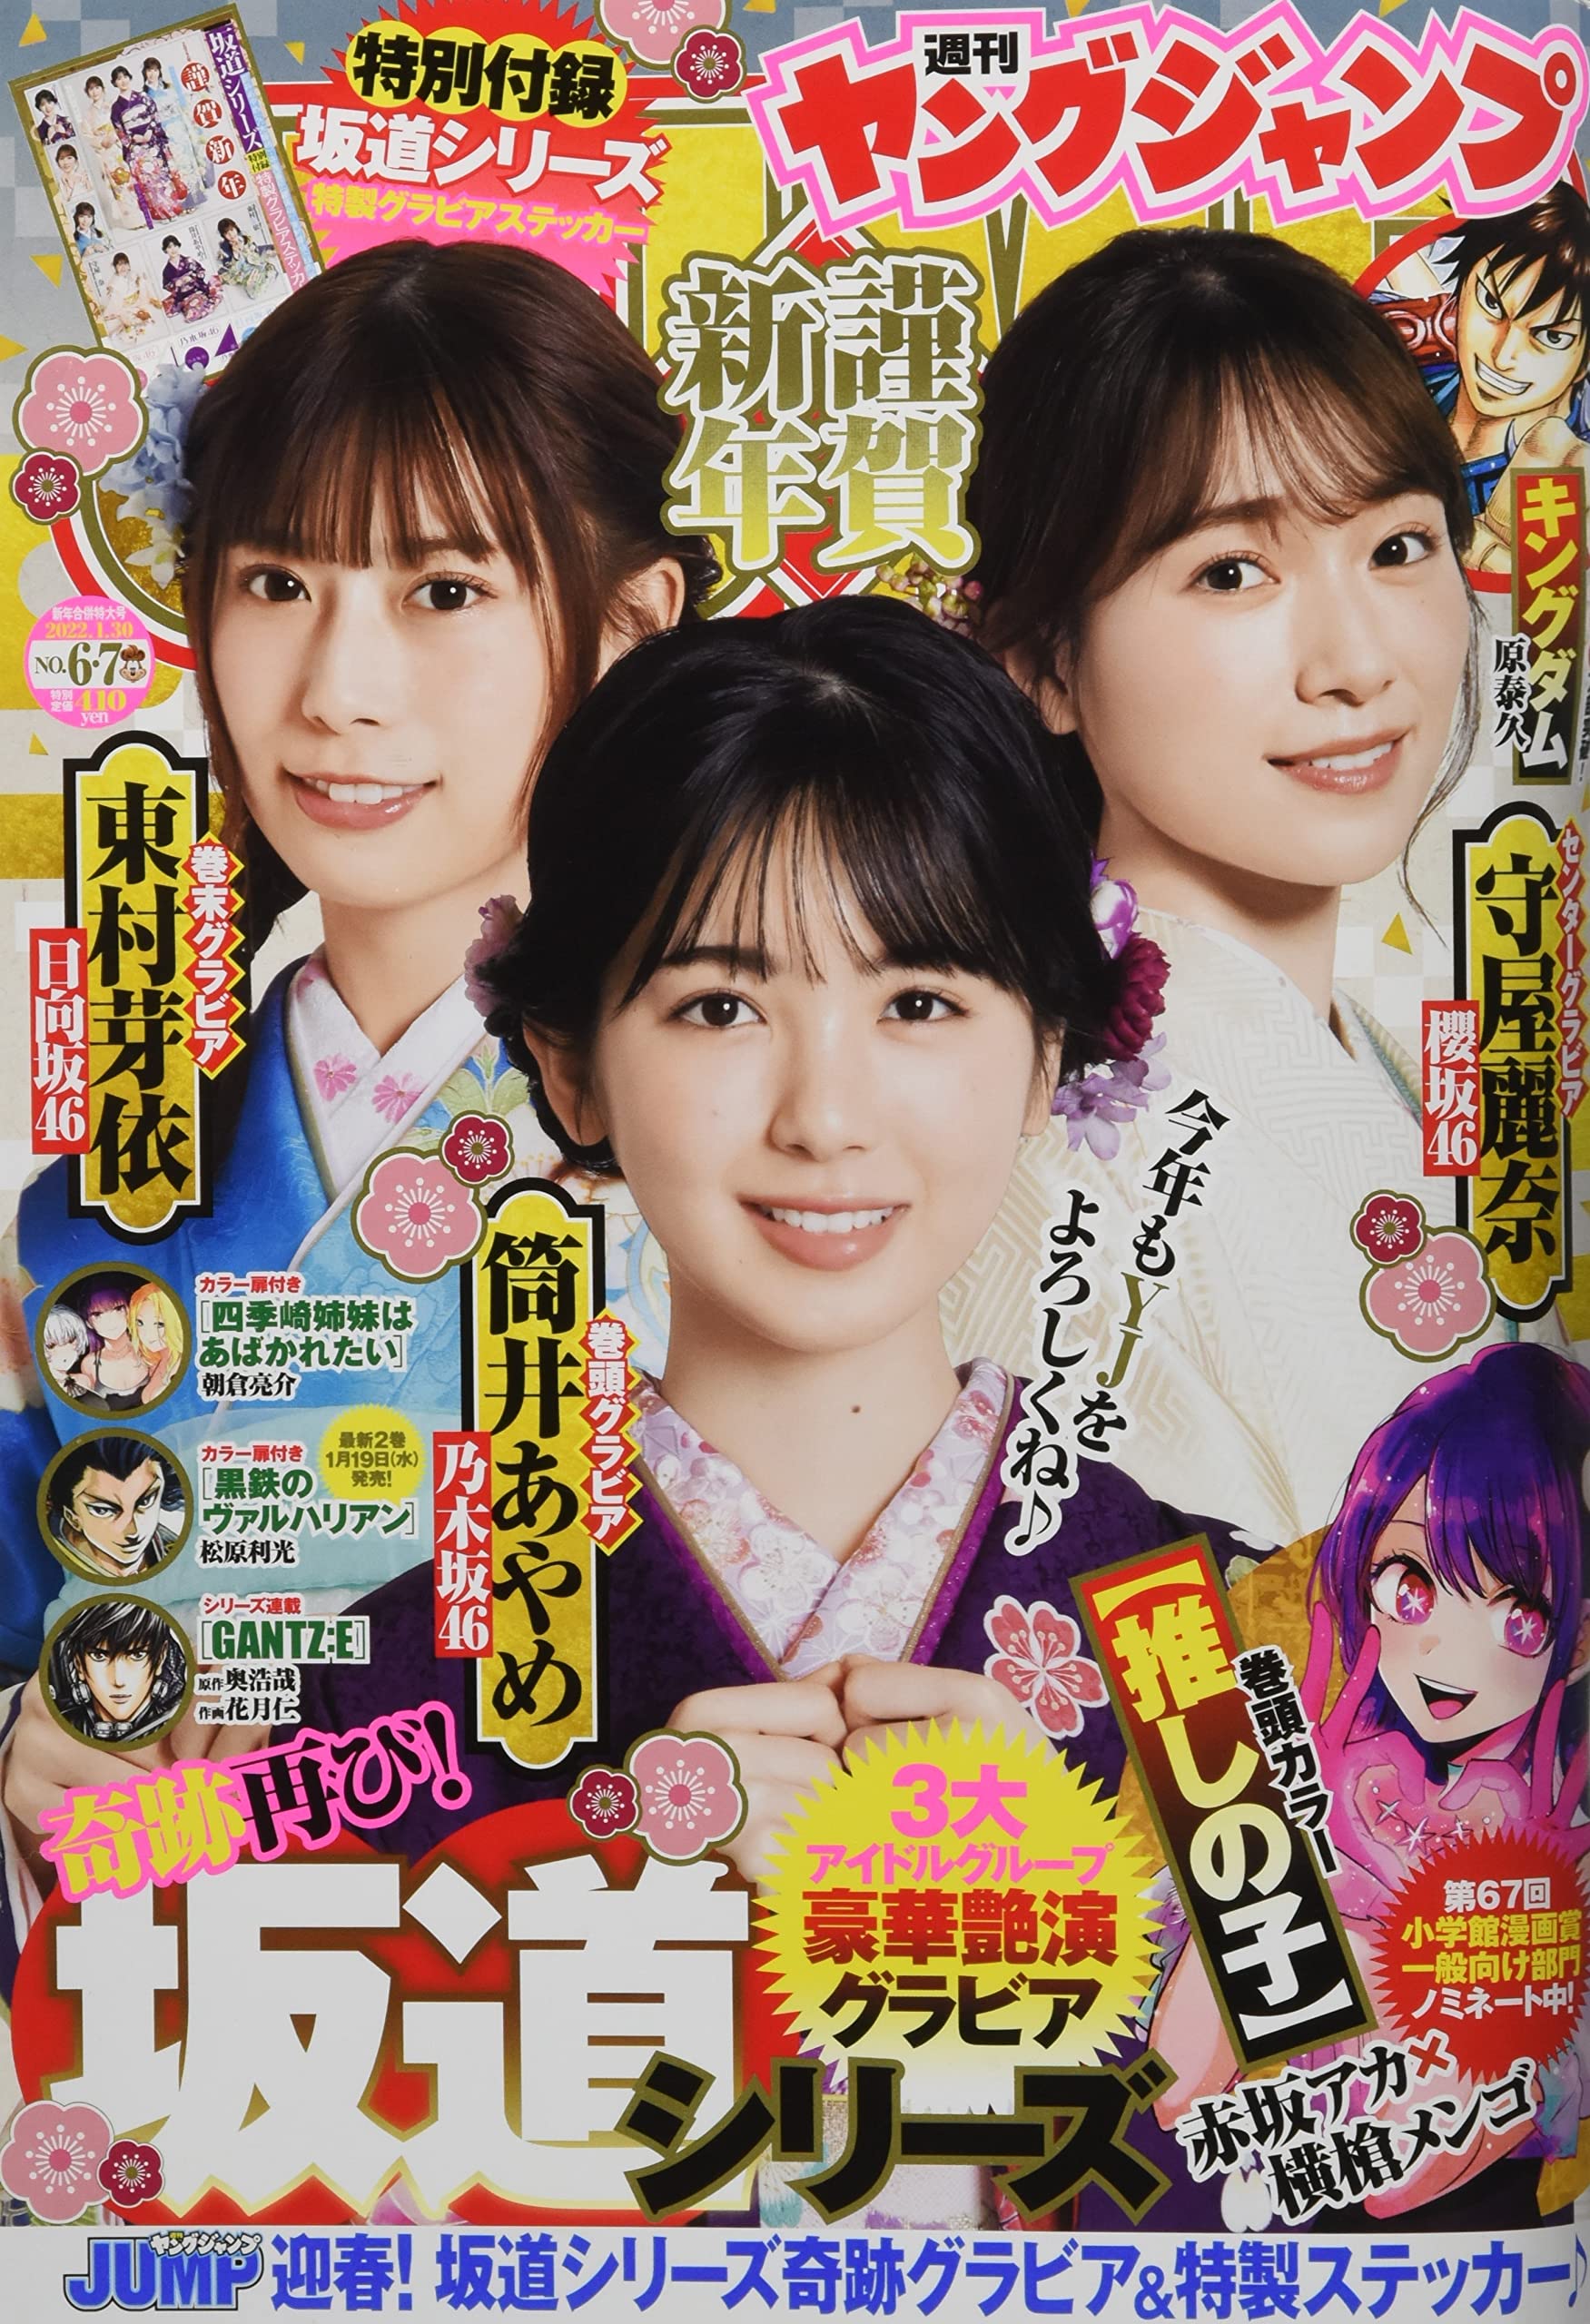  週刊ヤングジャンプ 2022年1月30日号 (No.6・7) 雑誌